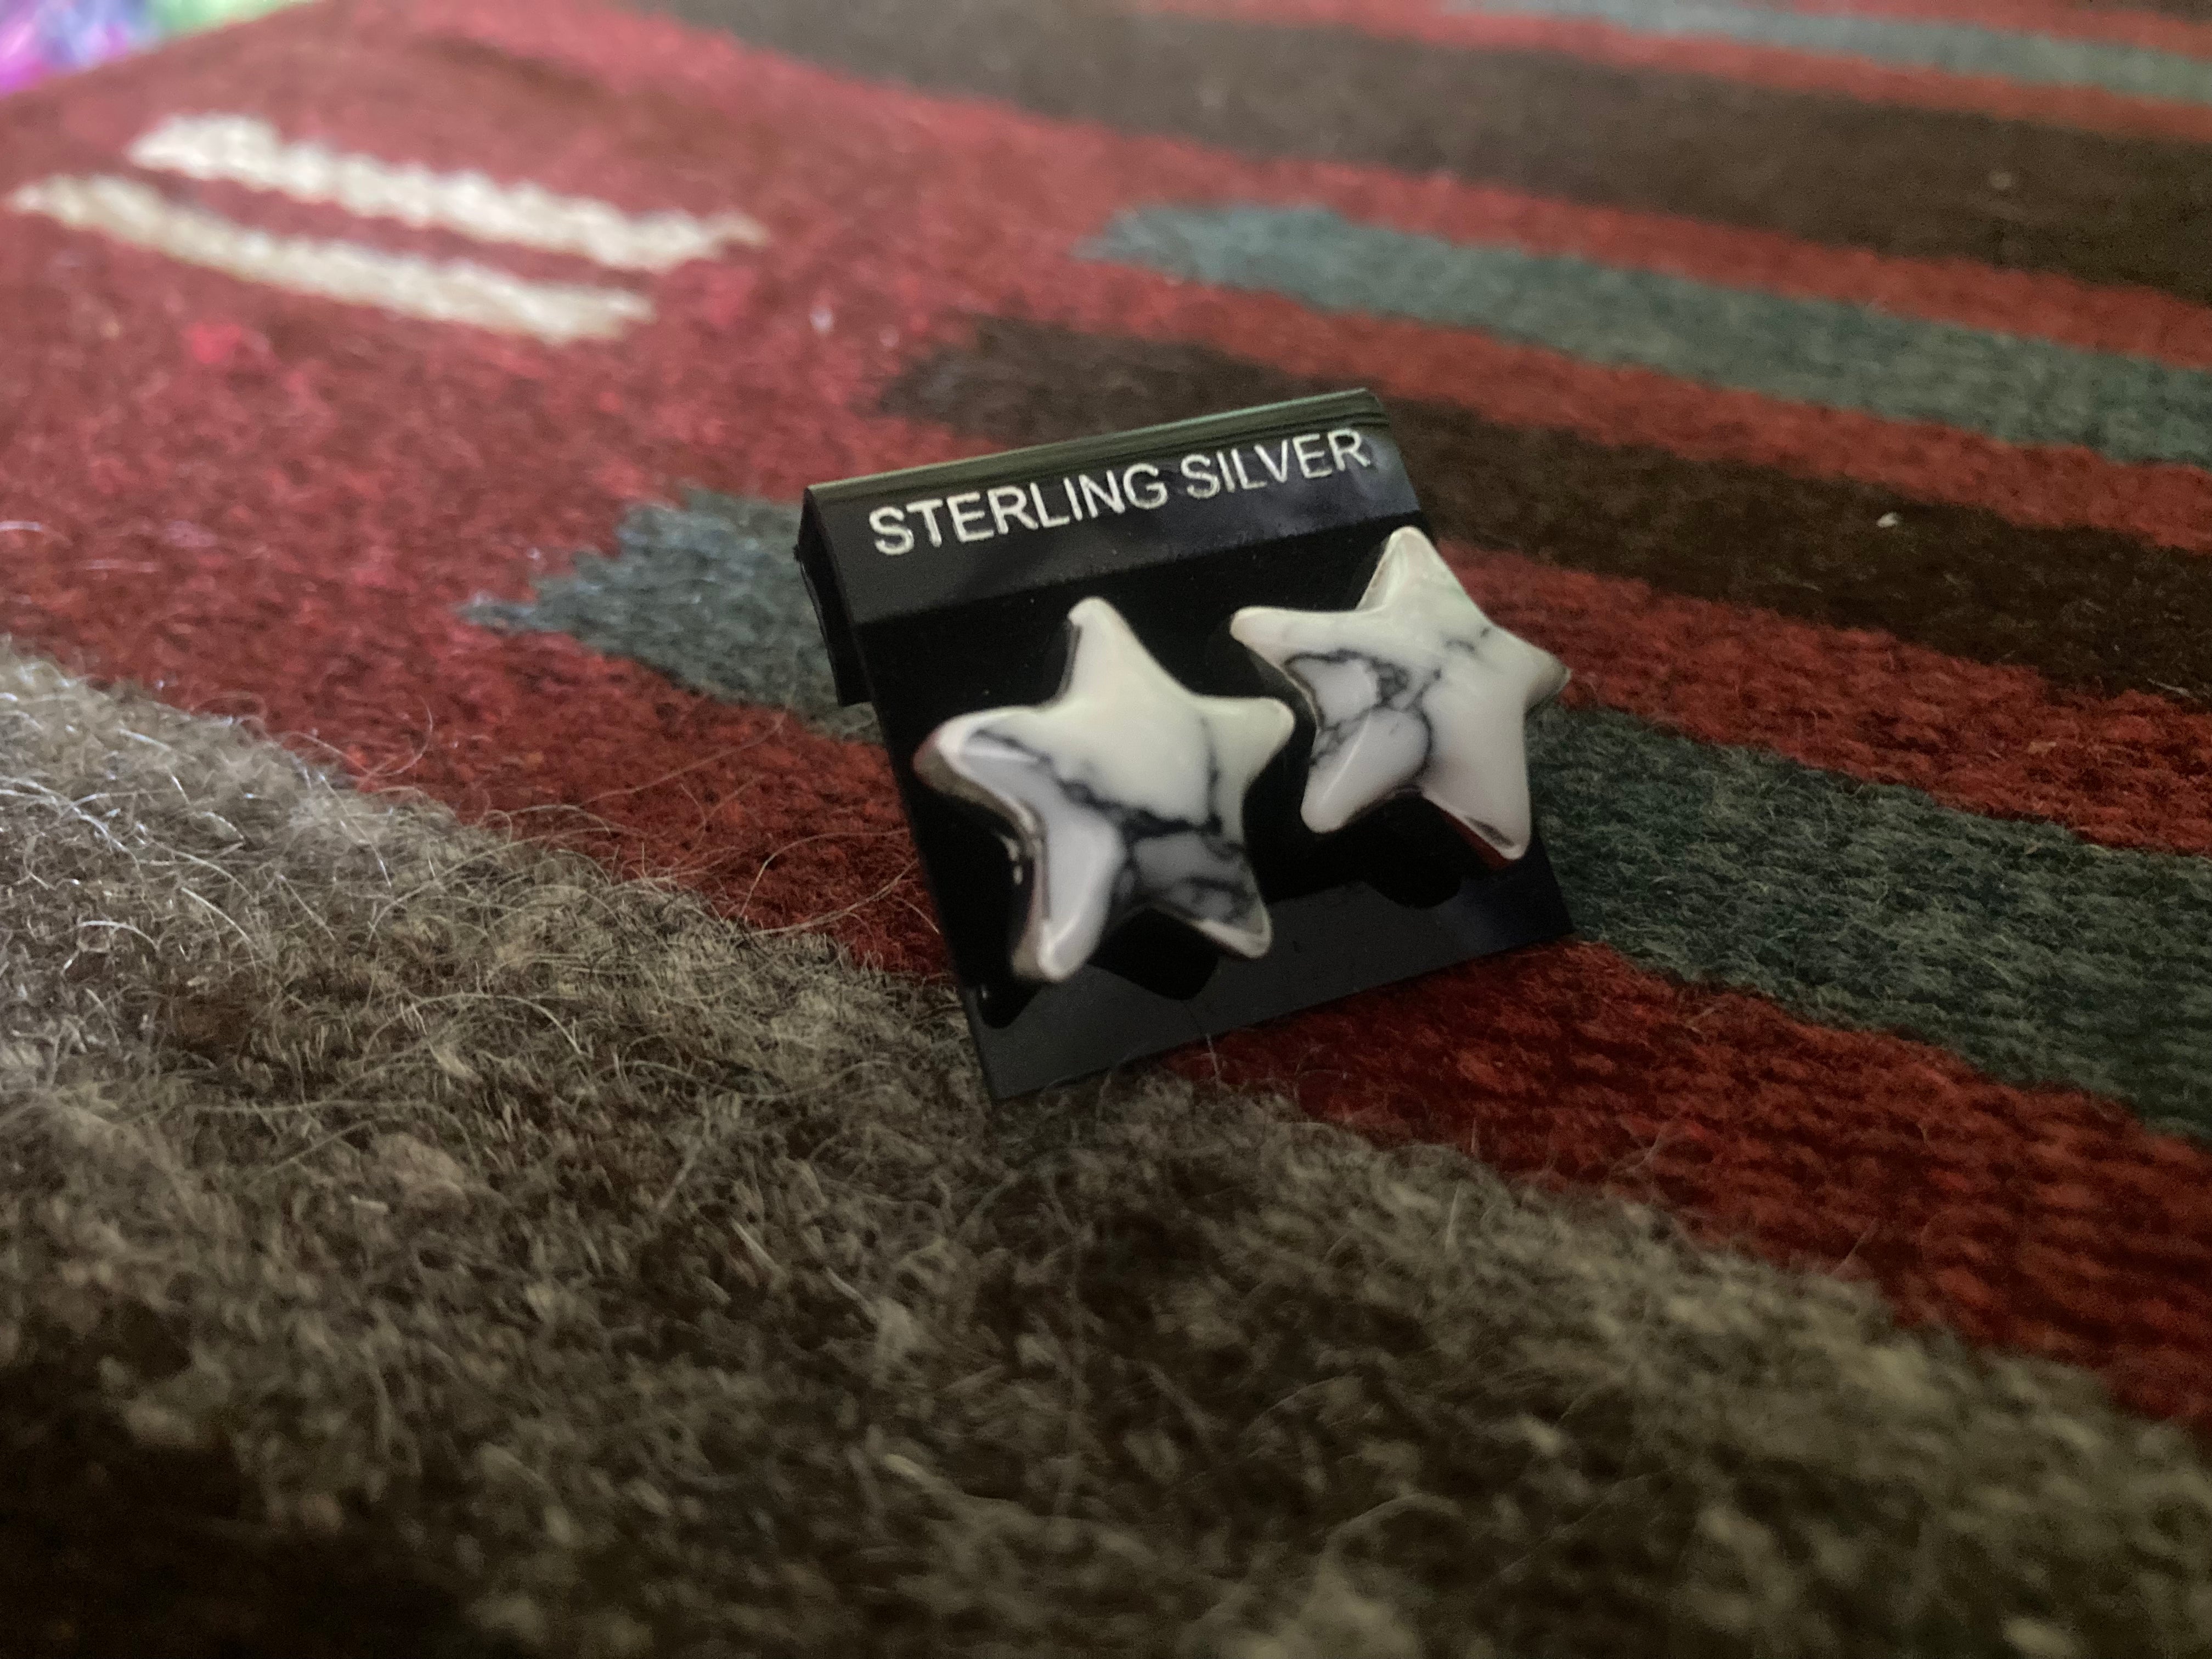 Handmade Sterling Silver and White Buffalo Star Earrings PSTPE32